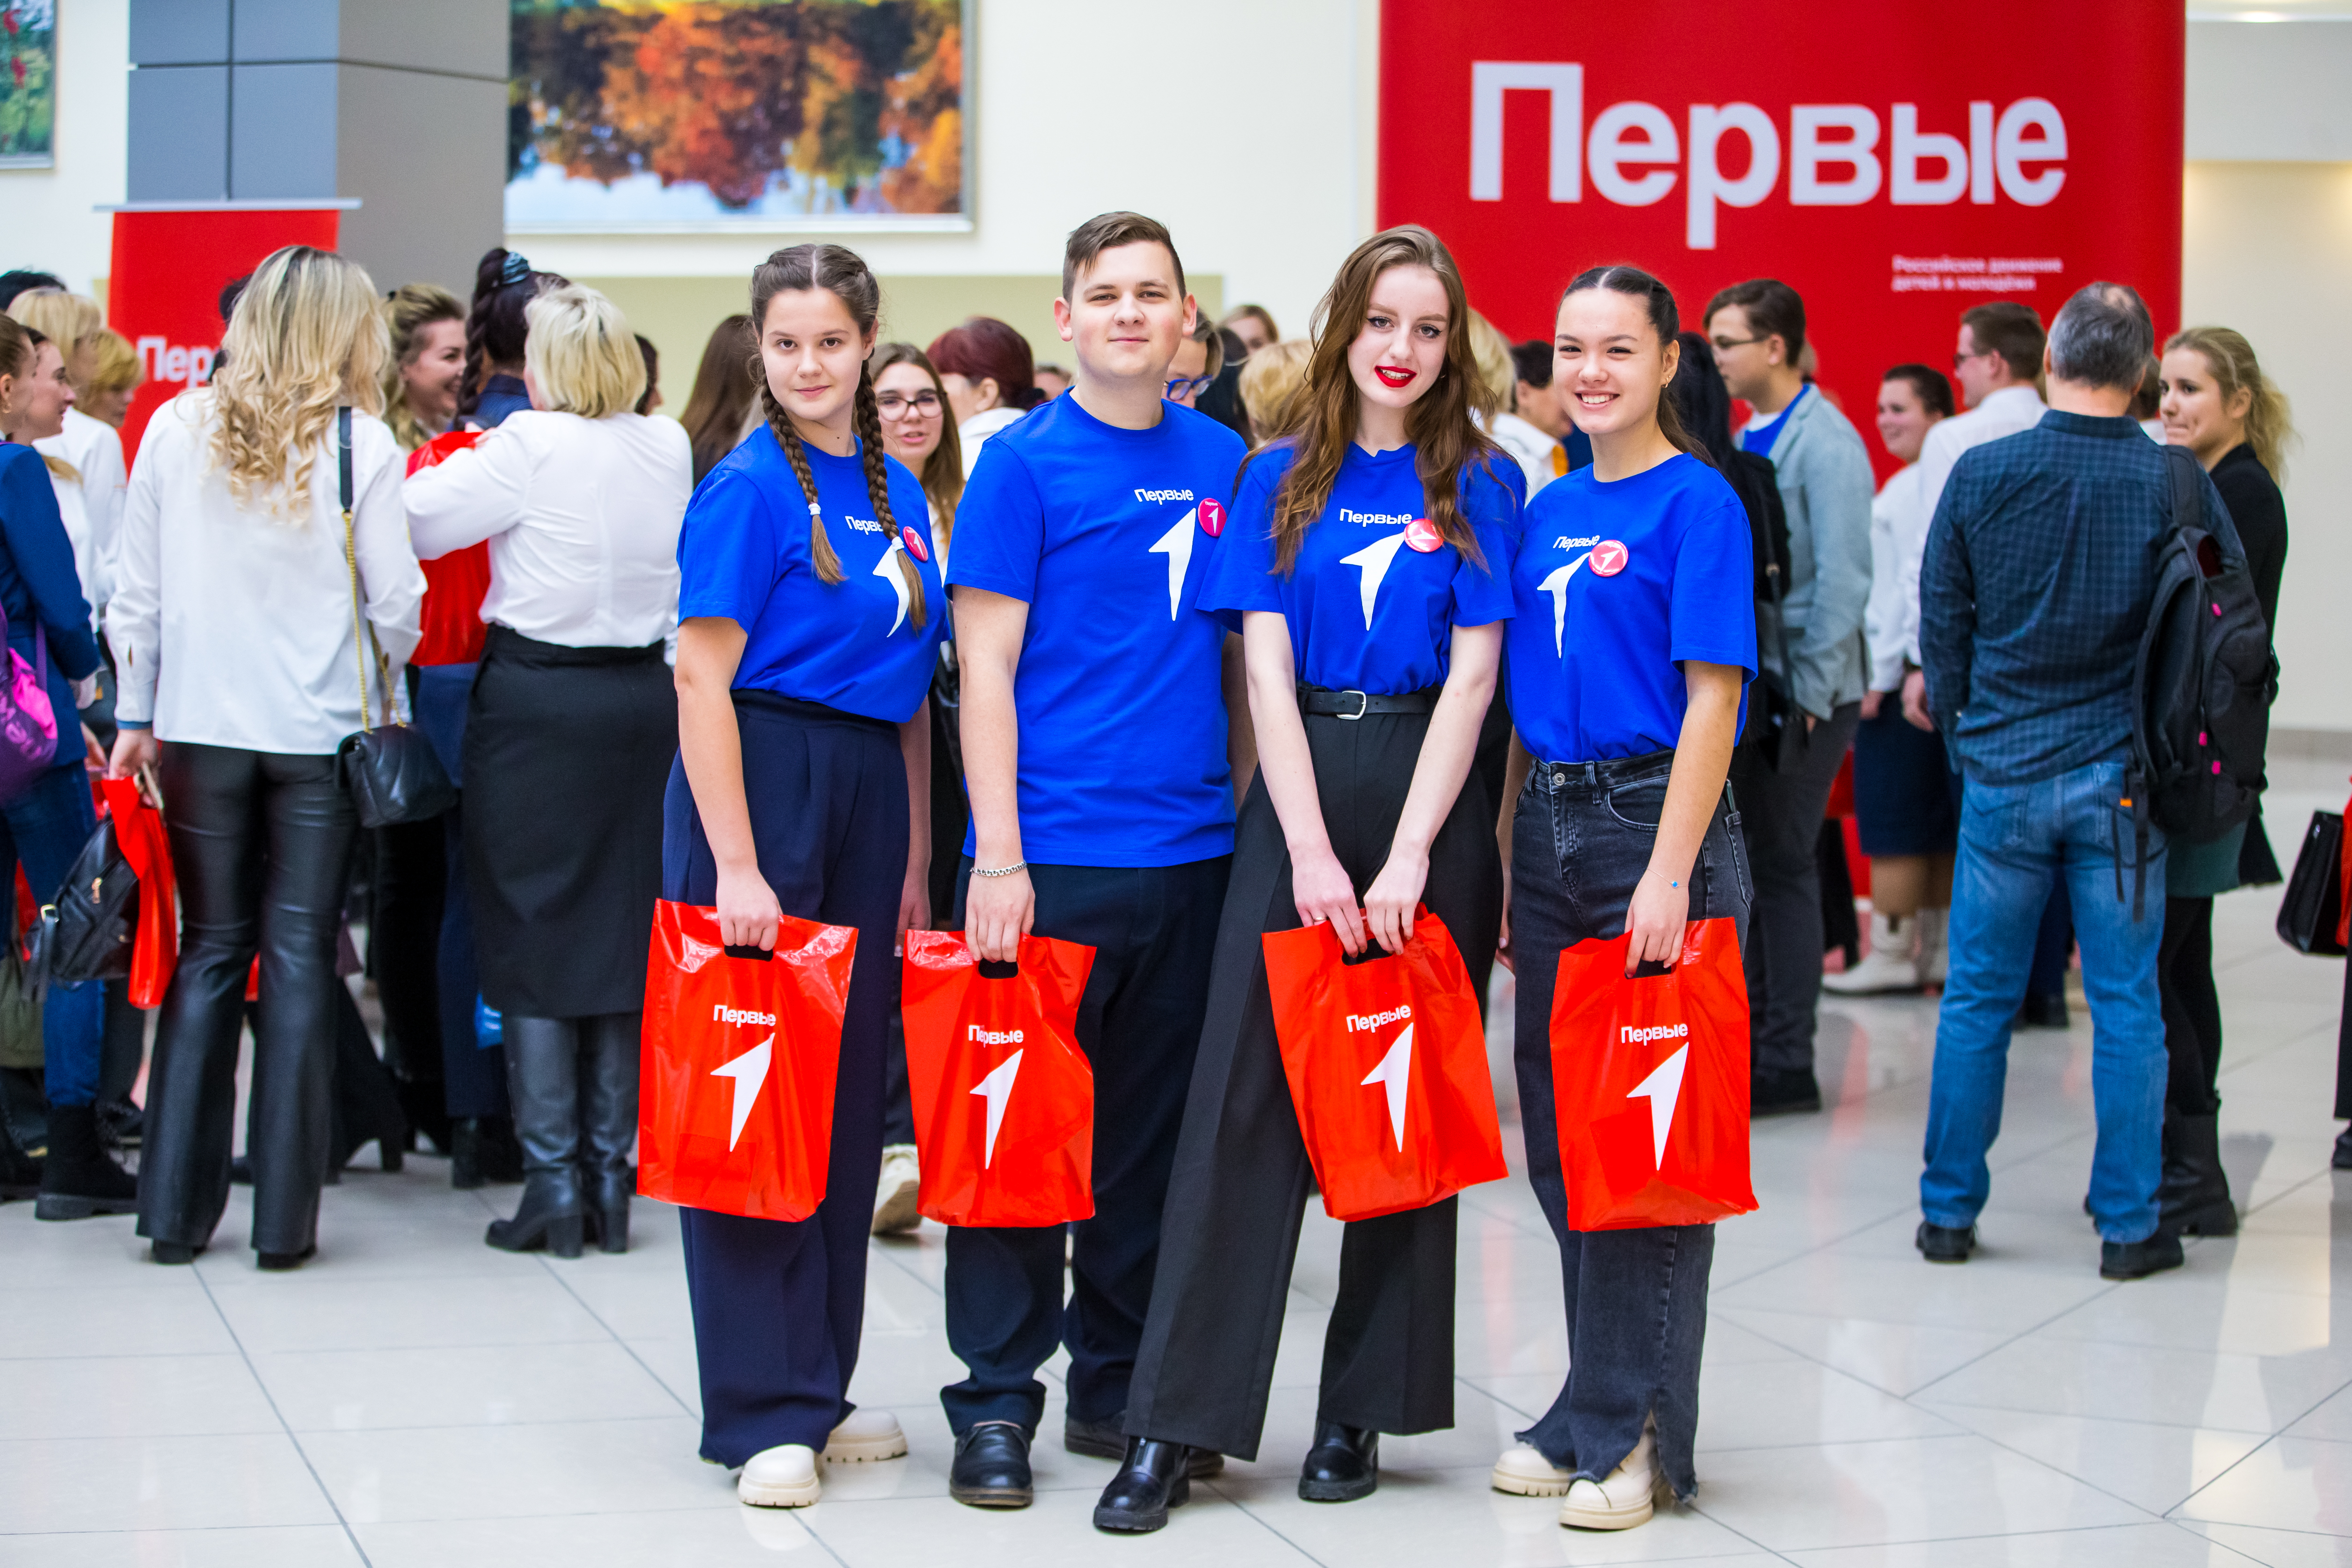 Первые Московской области примут участие во II съезде Движения Первых на выставке «Россия»